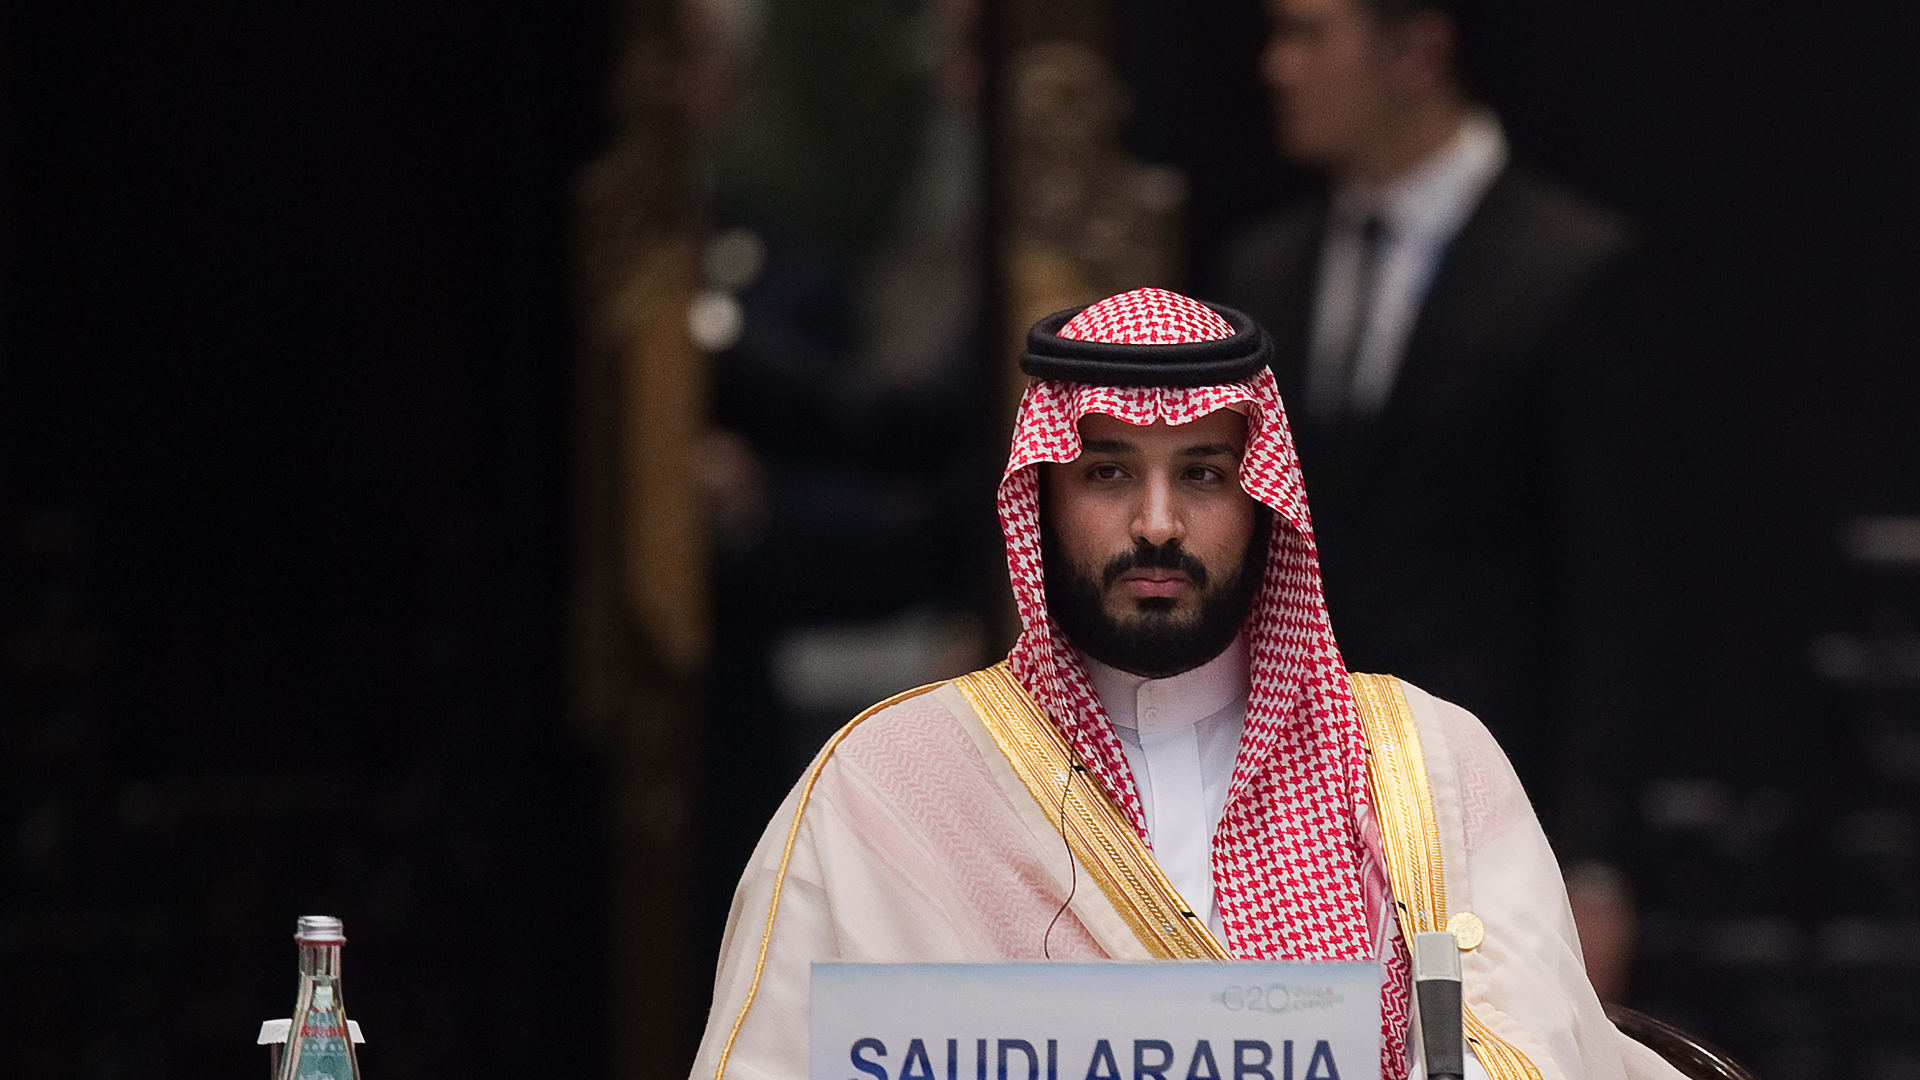 فيتش: توقيفات السعودية تفيد الإصلاح لكن تمركز السلطات يرفع المخاطر